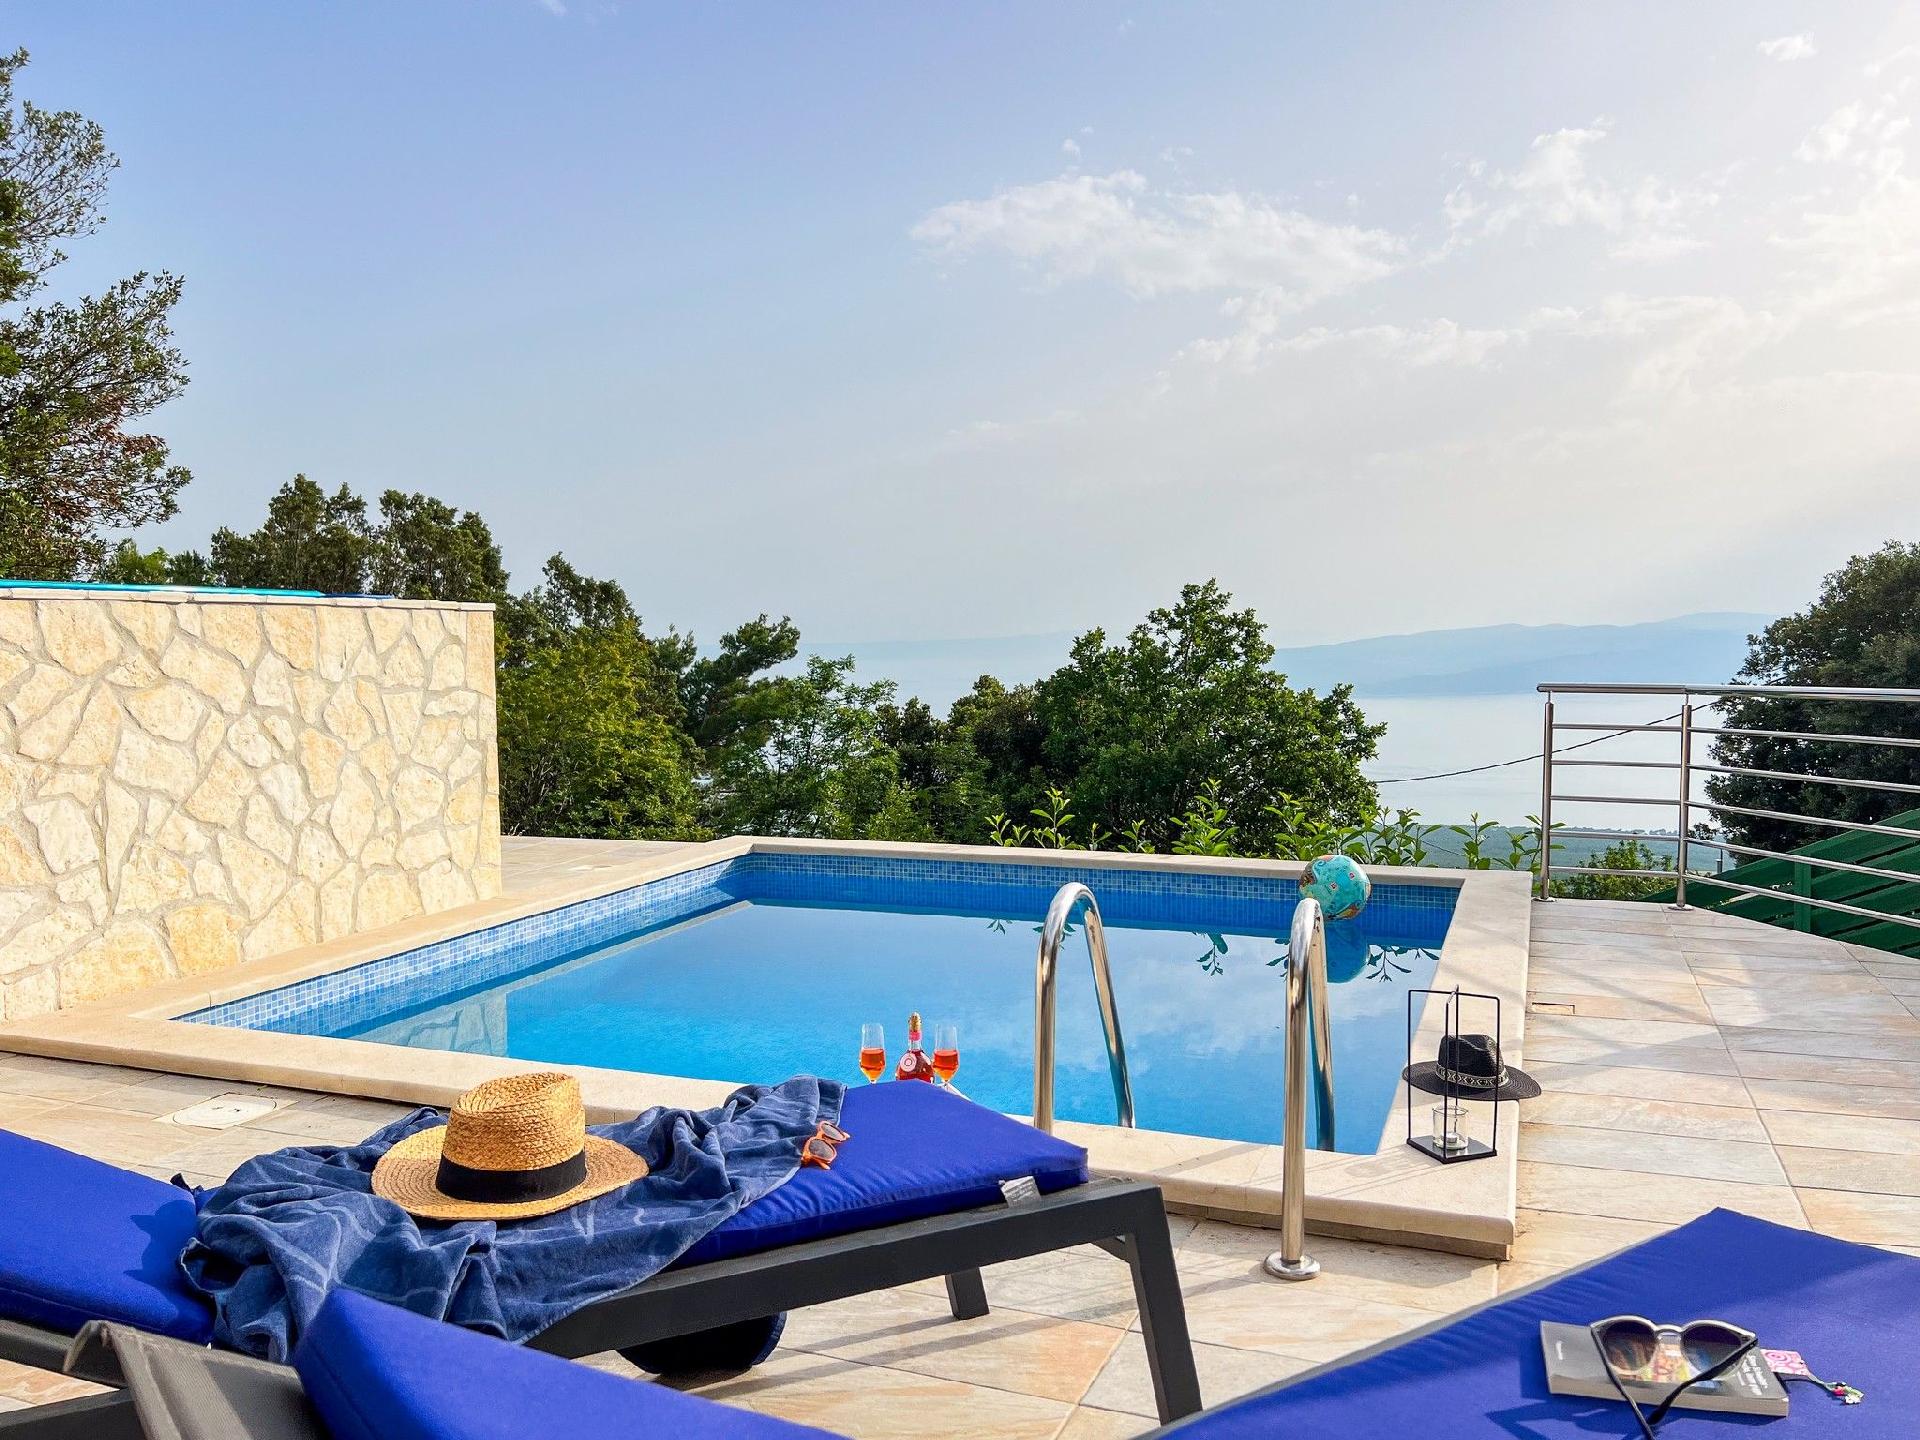 Günstiges Ferienhaus mit Pool und Meerblick Ferienhaus in Kroatien